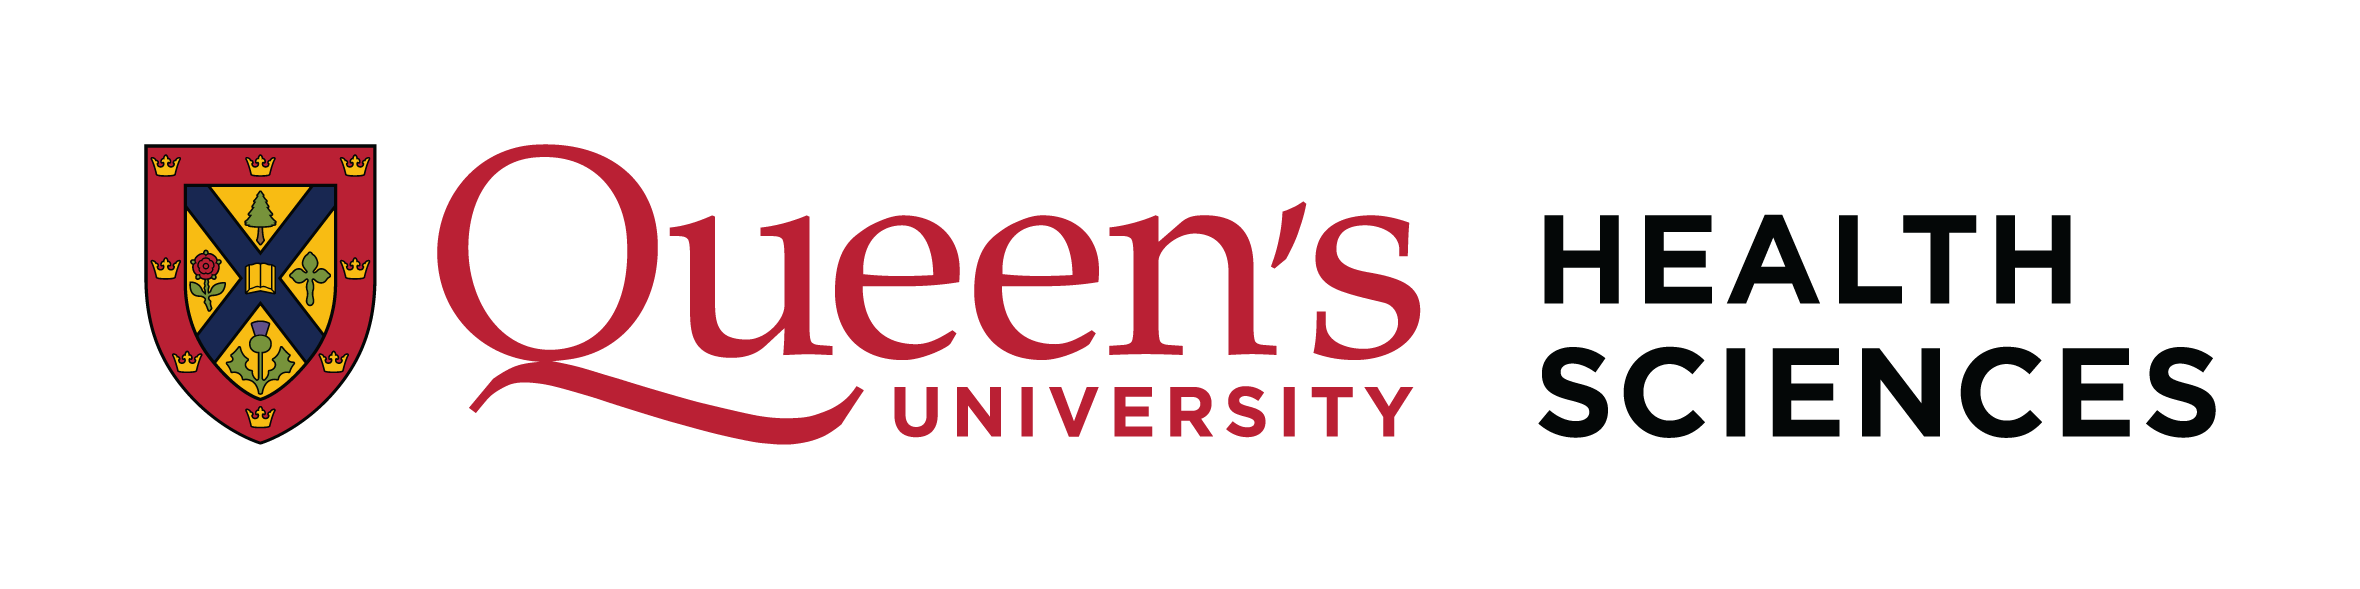 Queen's University - Health Sciences